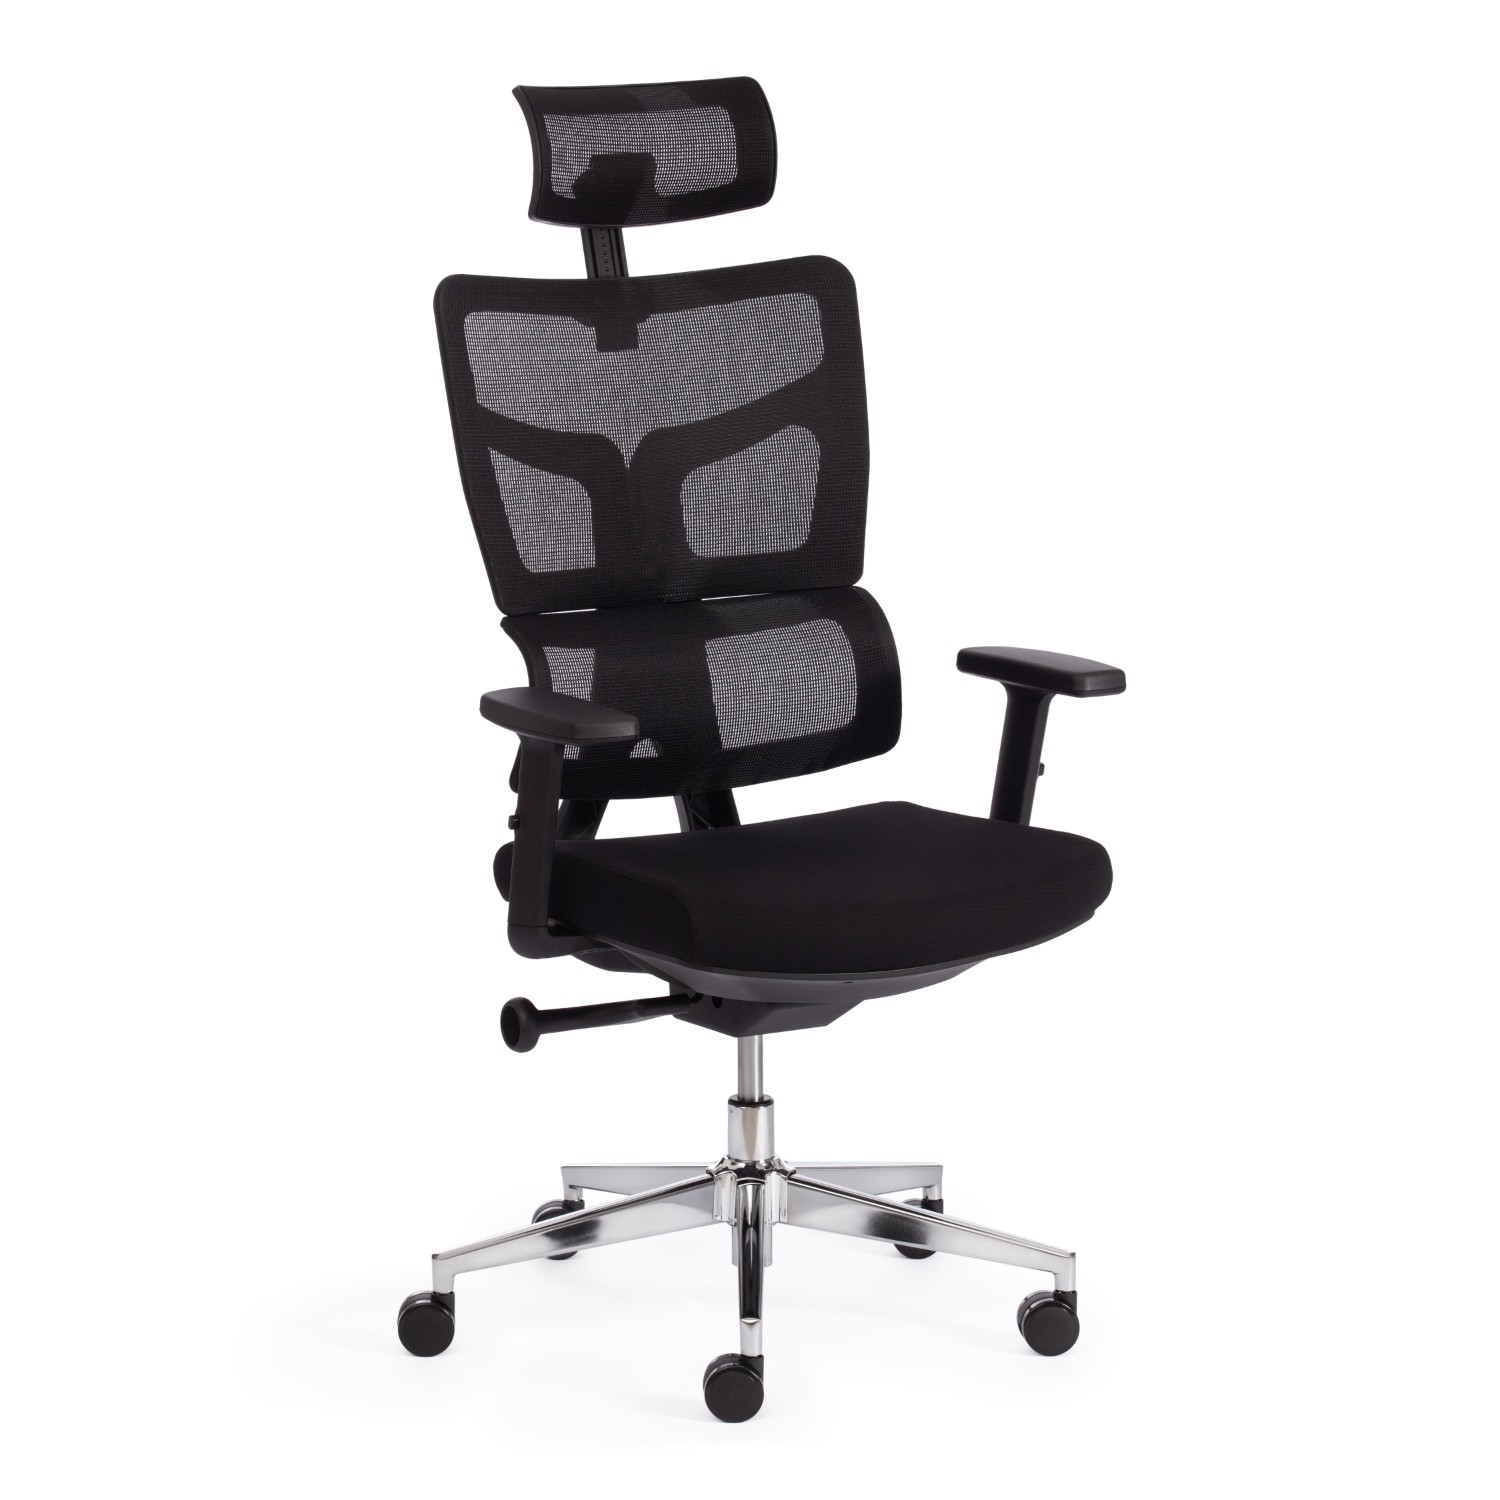 Кресло ТС Mesh тканевое с сеткой черное кресло тс fly ткань 207 2603 черное с серым